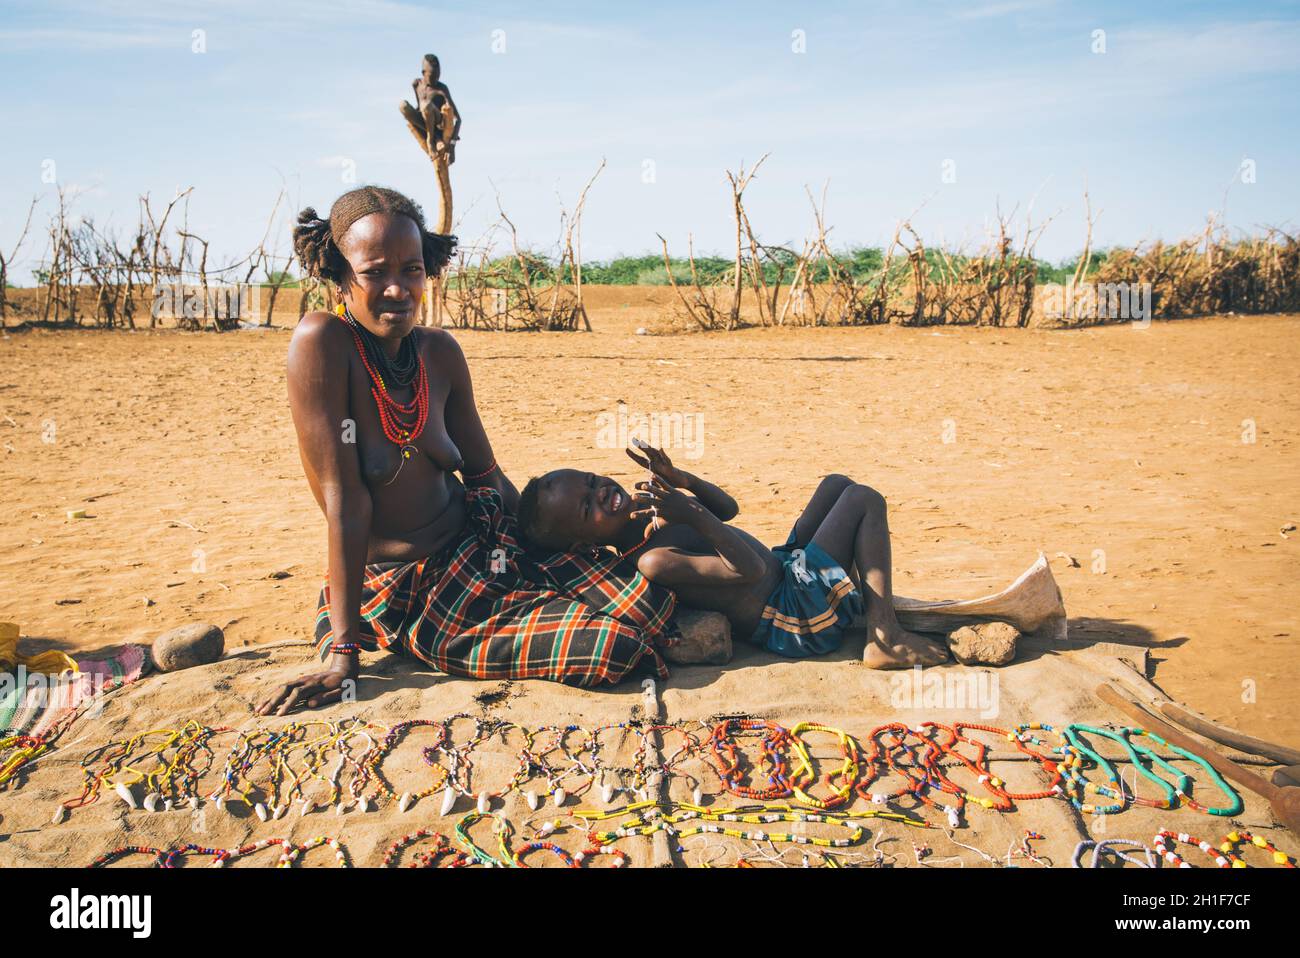 Omorate, Valle dell'Omo, Etiopia - 11 maggio 2019: Donna della tribù africana Dasanesh con bambino che offre souvenir fatti a mano. Daasanach sono etnie Cushitiche Foto Stock